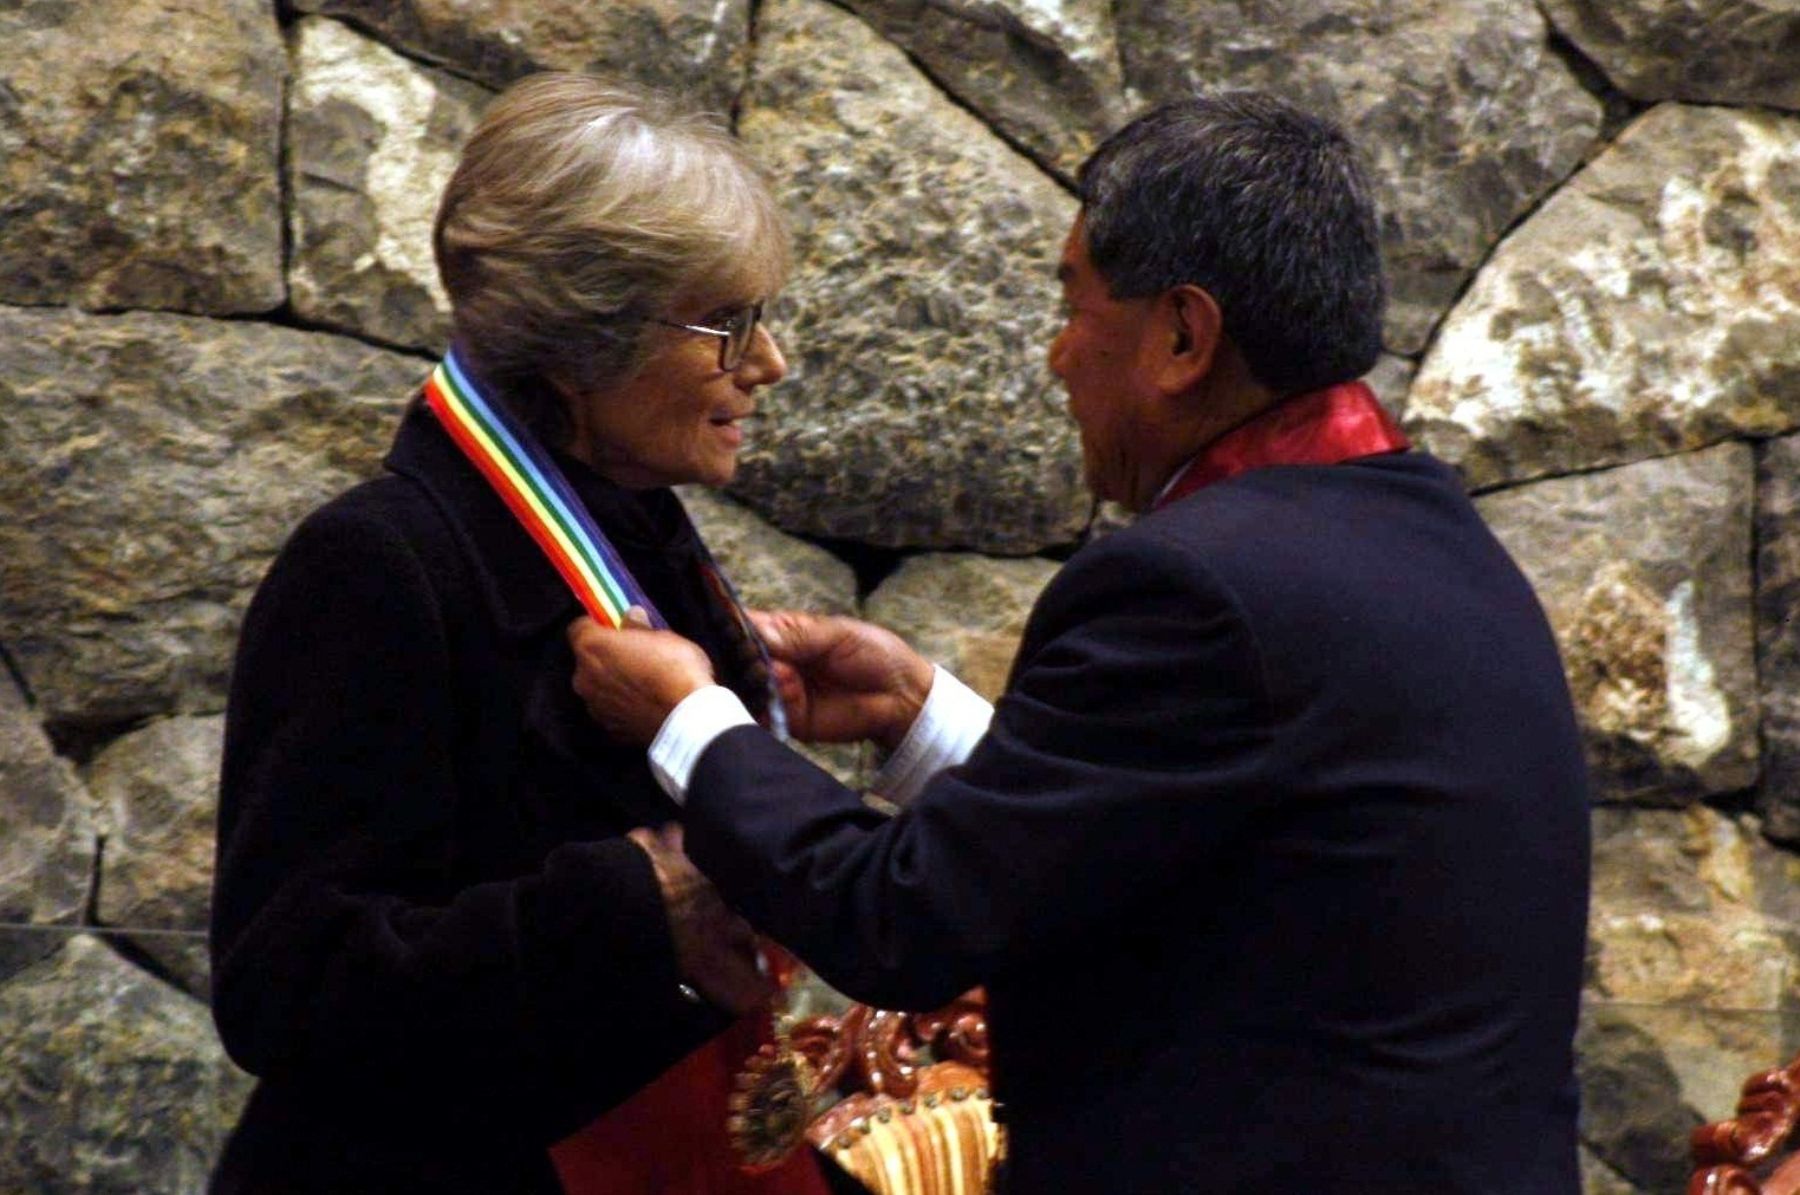 La historiadora Mariana Moulde de Pease fue distinguida con la medalla Centenario de Machu Picchu por las campañas en defensa de la cultura inca y del santuario incaico. Foto: ANDINA / Percy Hurtado.